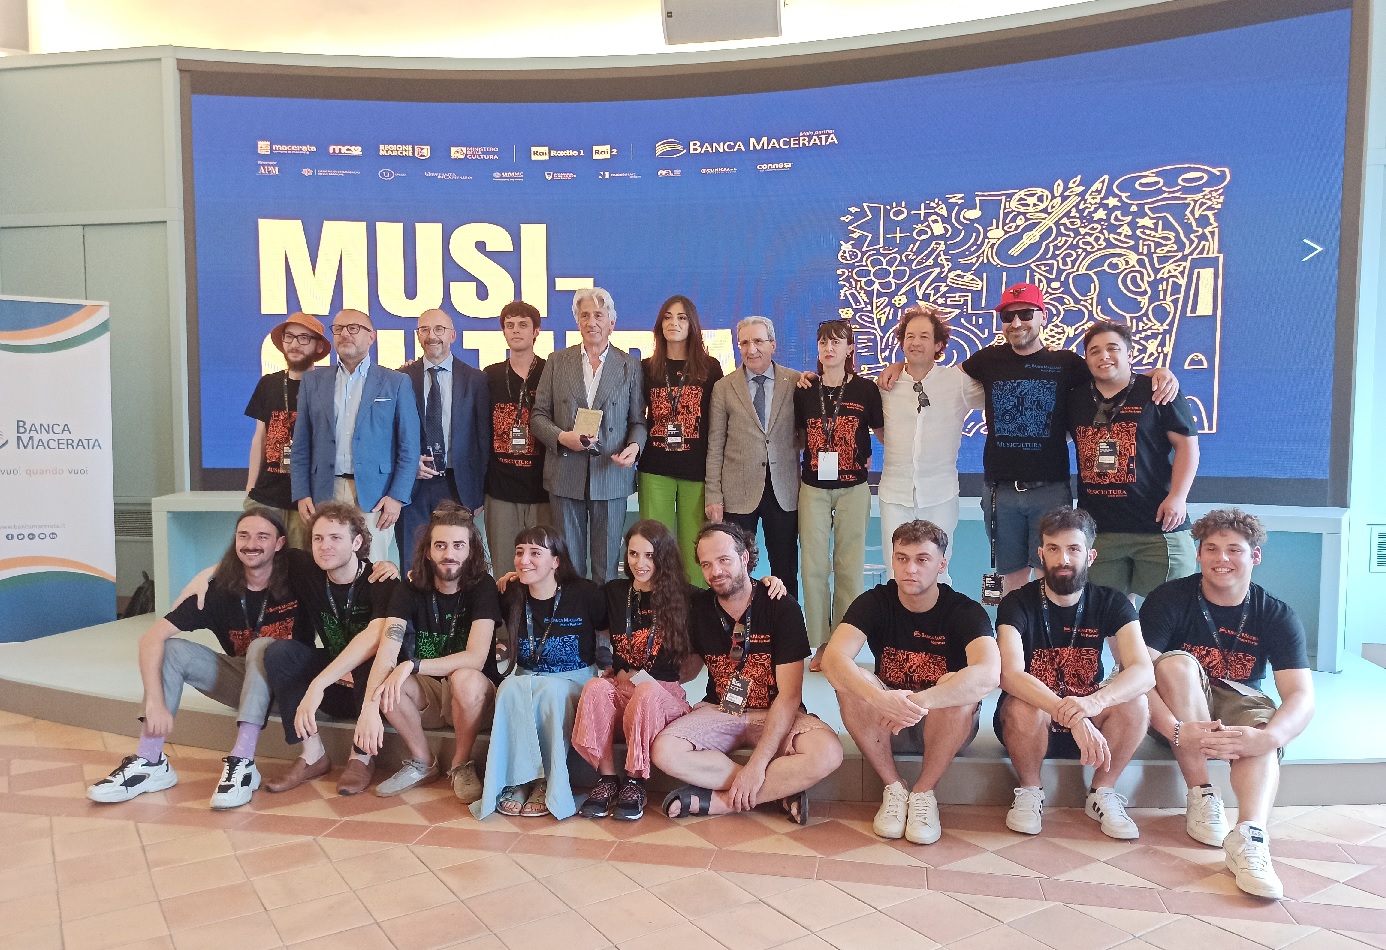 Musicultura, a La Controra il concerto degli artisti vincitori